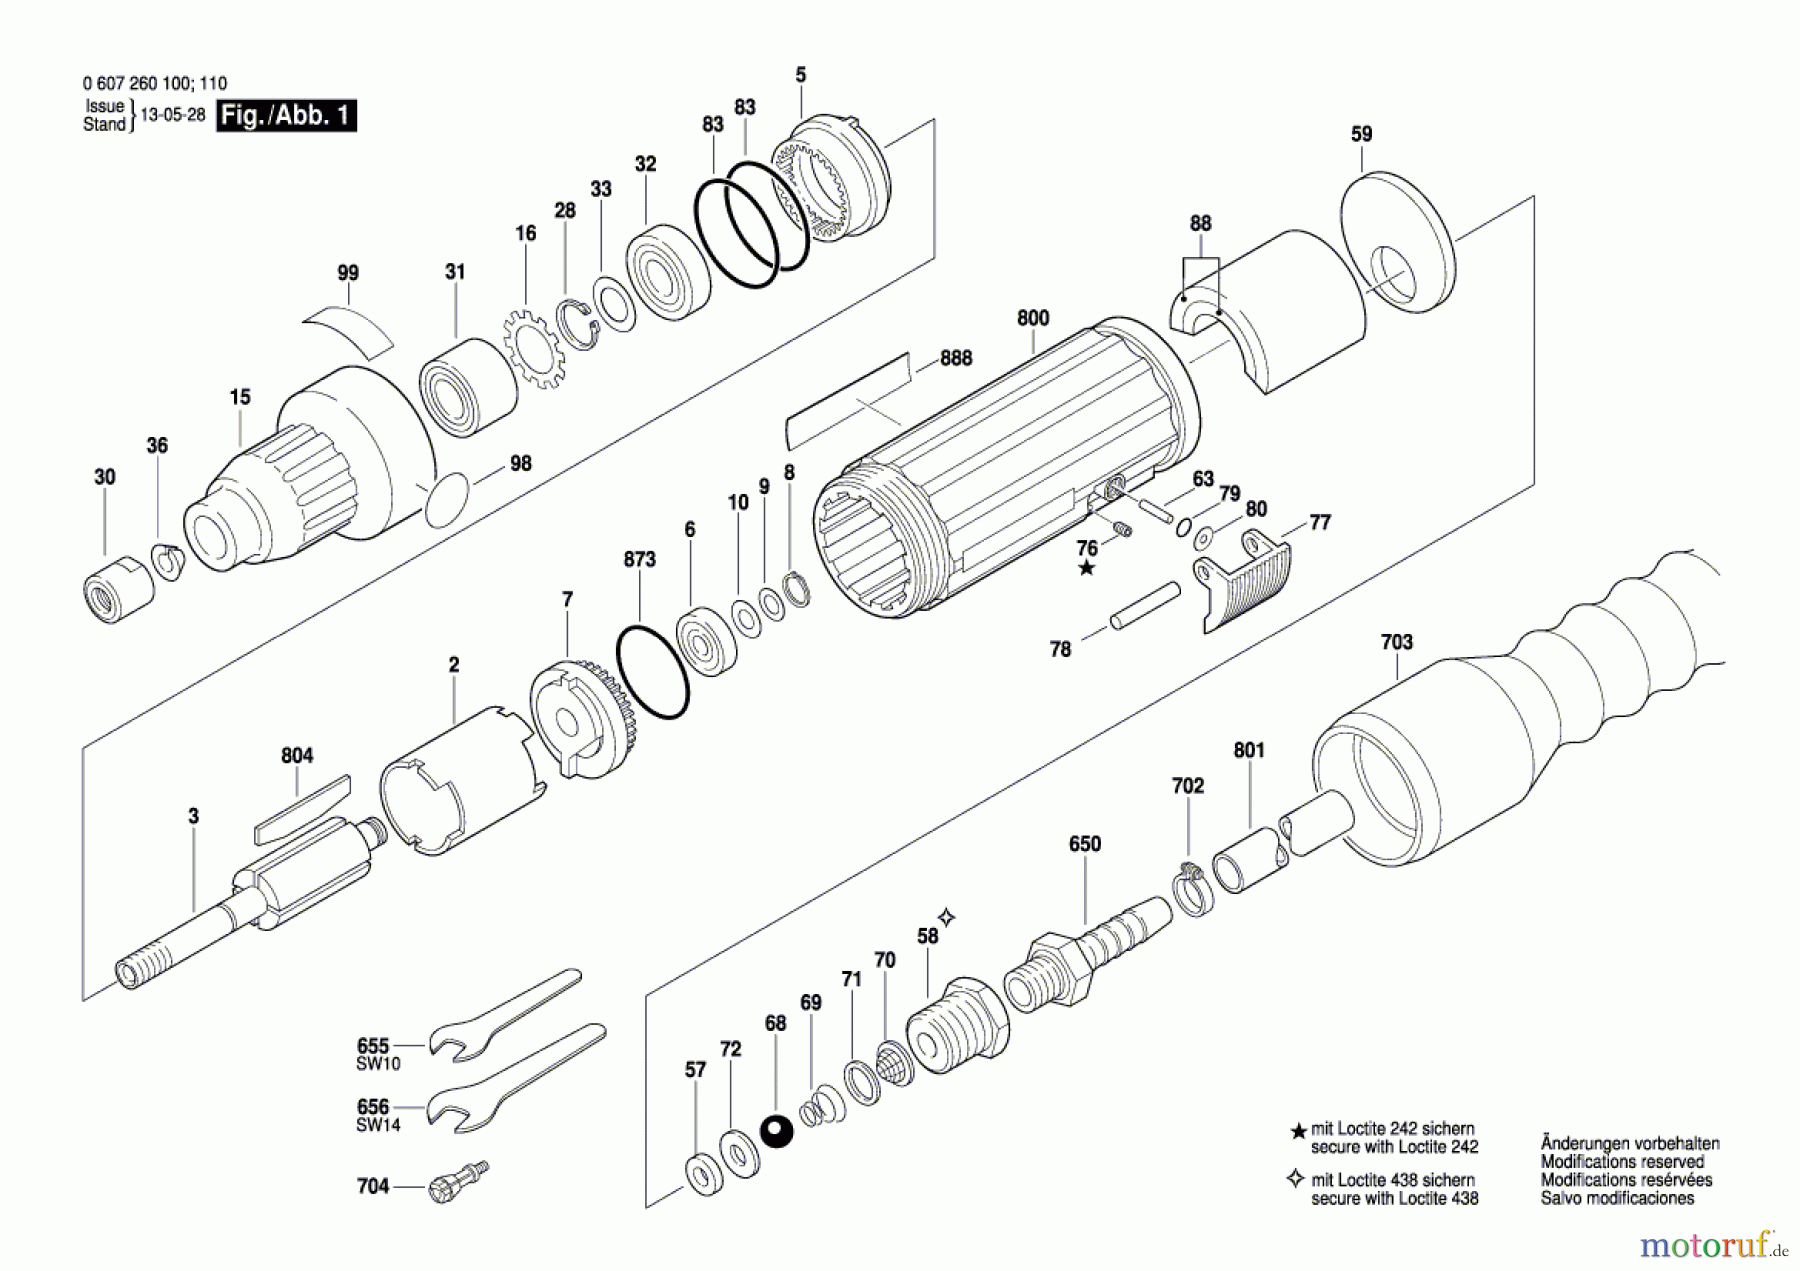  Bosch Werkzeug Pw-Geradschleifer 320 WATT-SERIE Seite 1